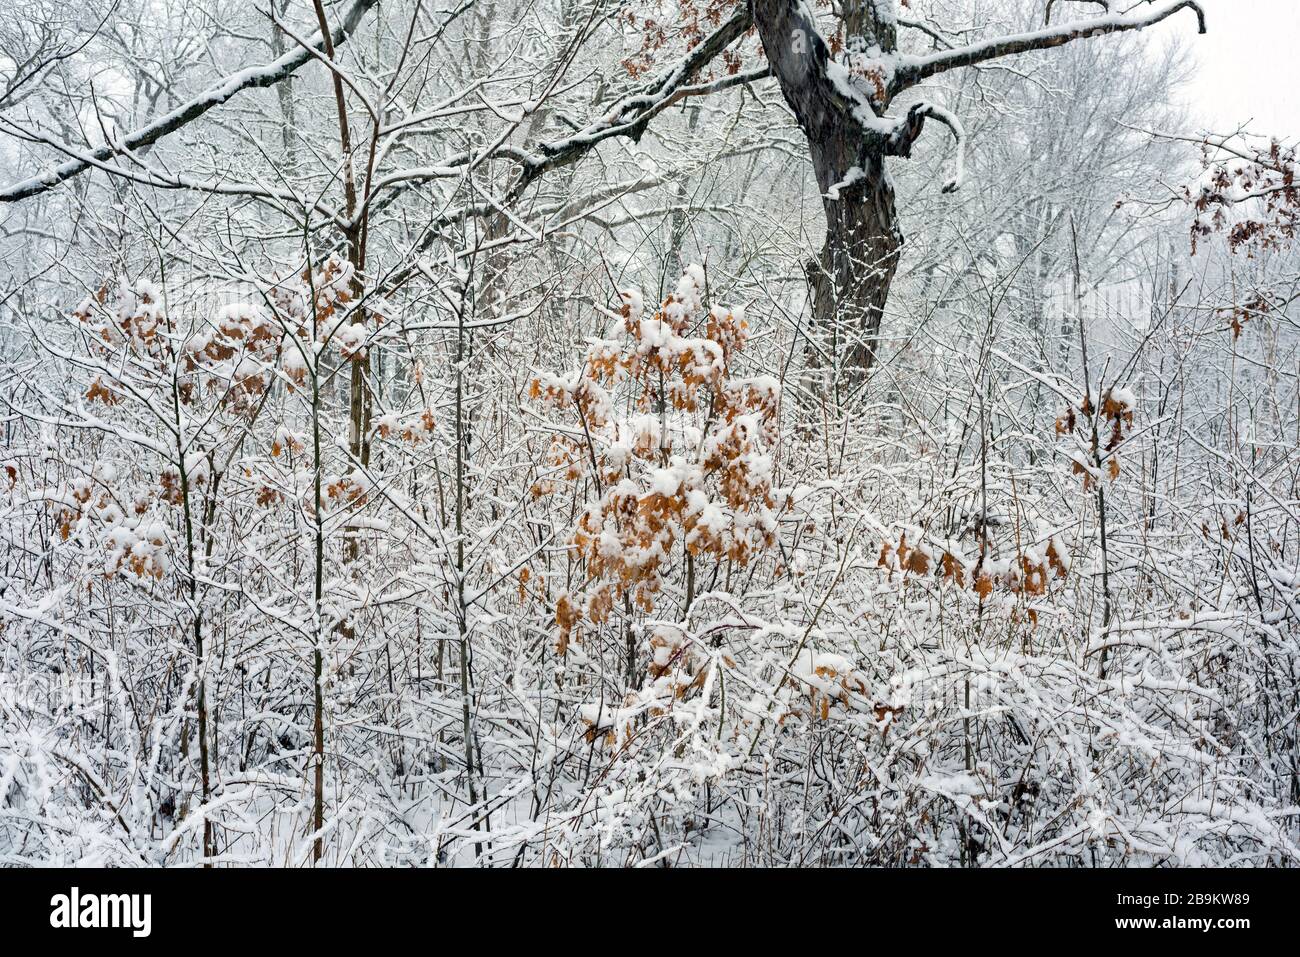 Eine frische Schneebeschichtung bedeckt Äste und Bäume in einem weißen Wunderland im Norden von Indiana. Stockfoto